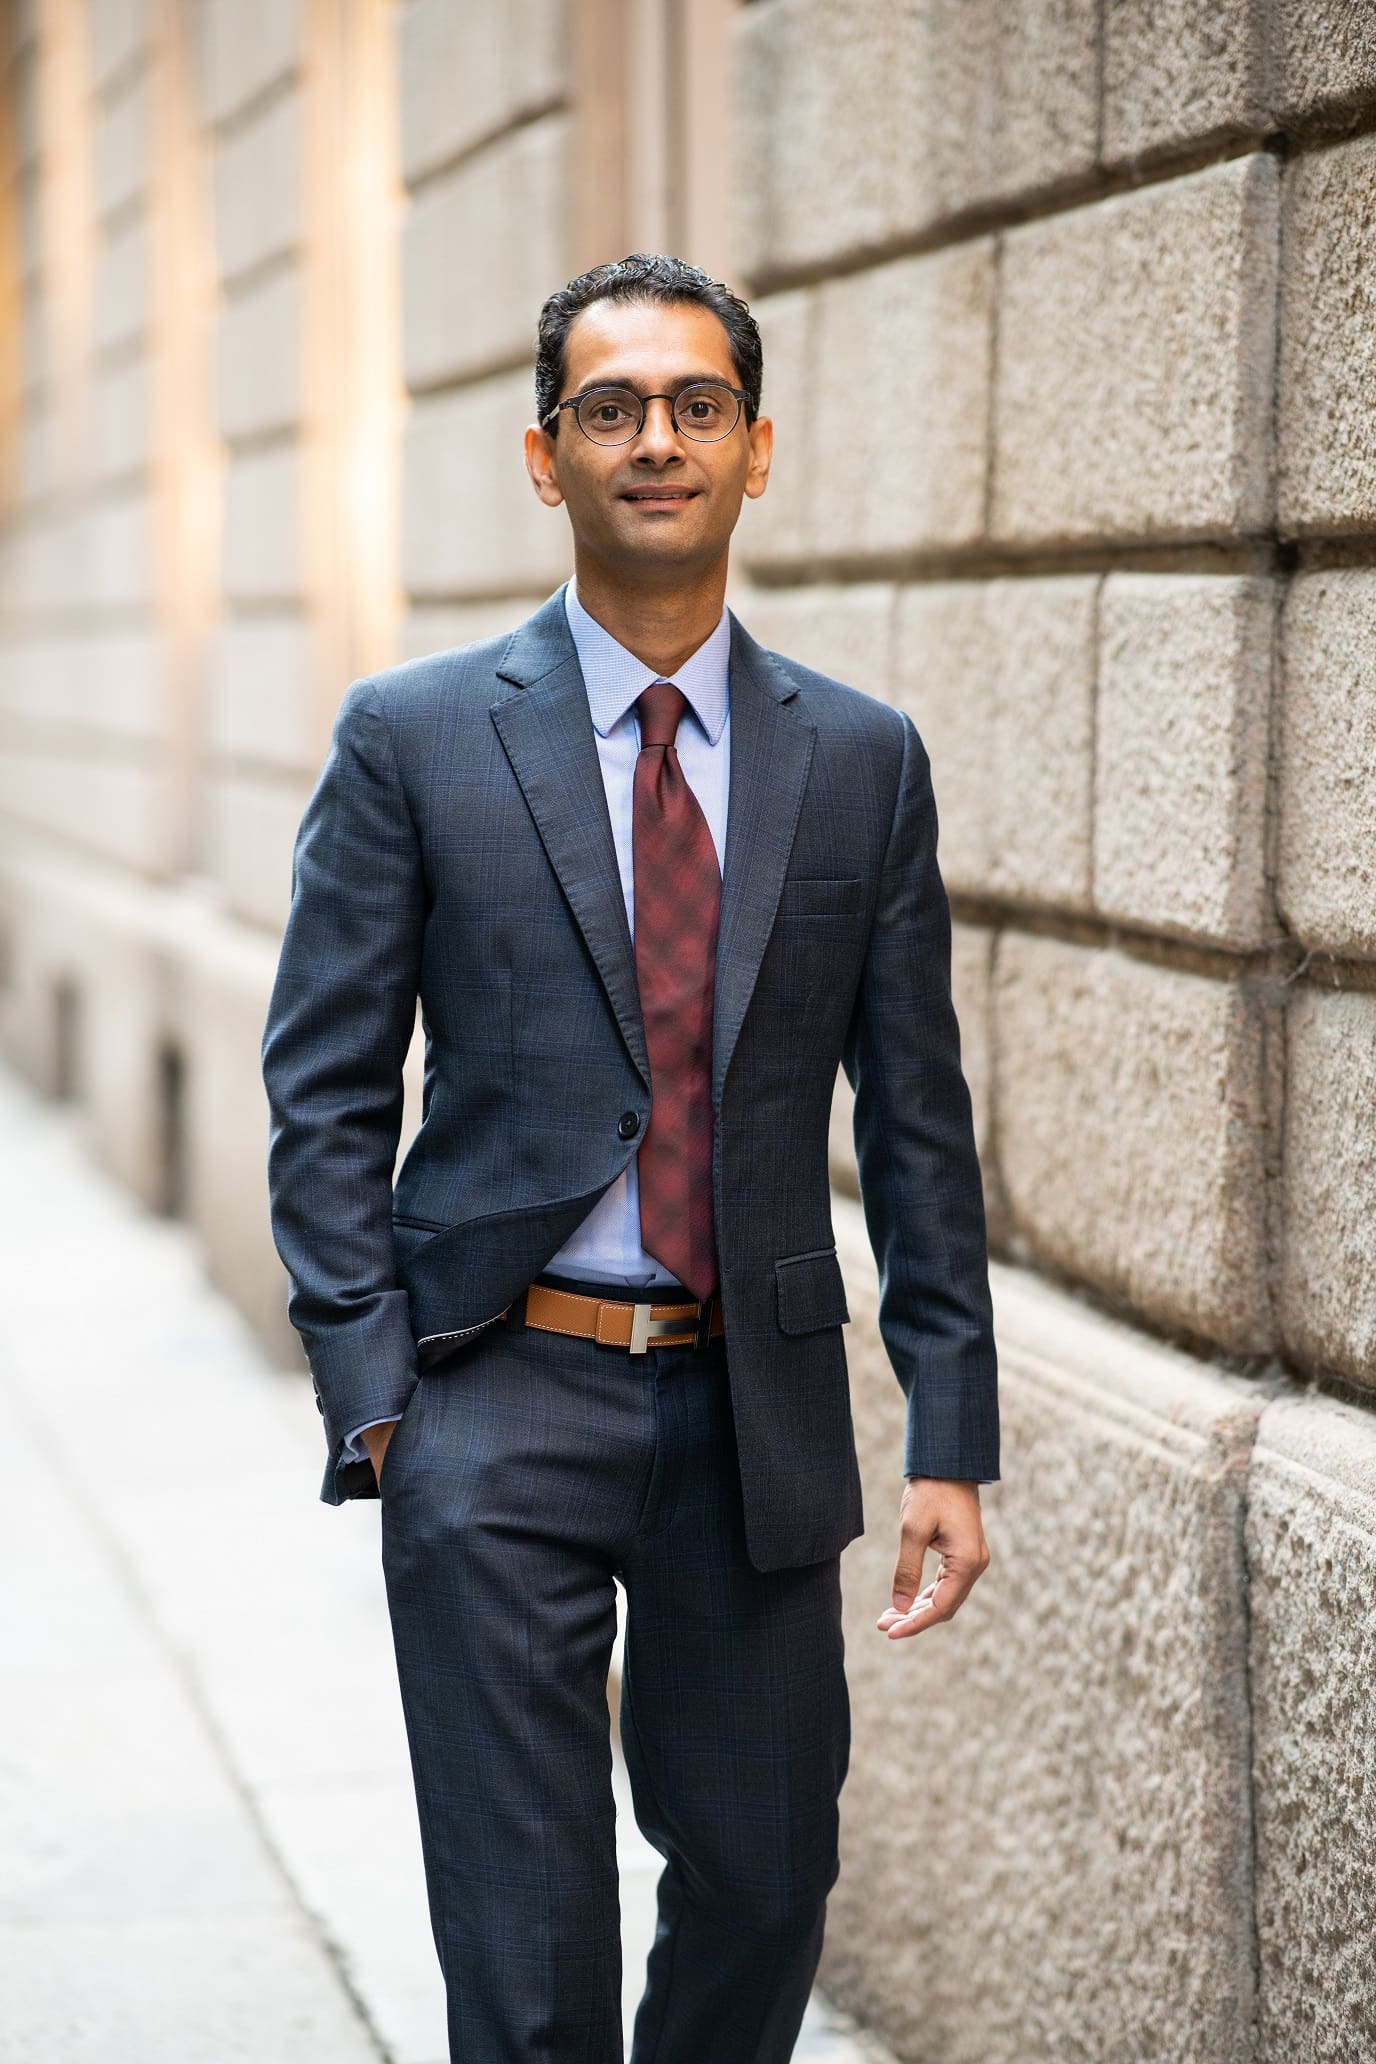 Meet Chetan Mathur, an unstoppable Entrepreneur & Supply Chain Strategist